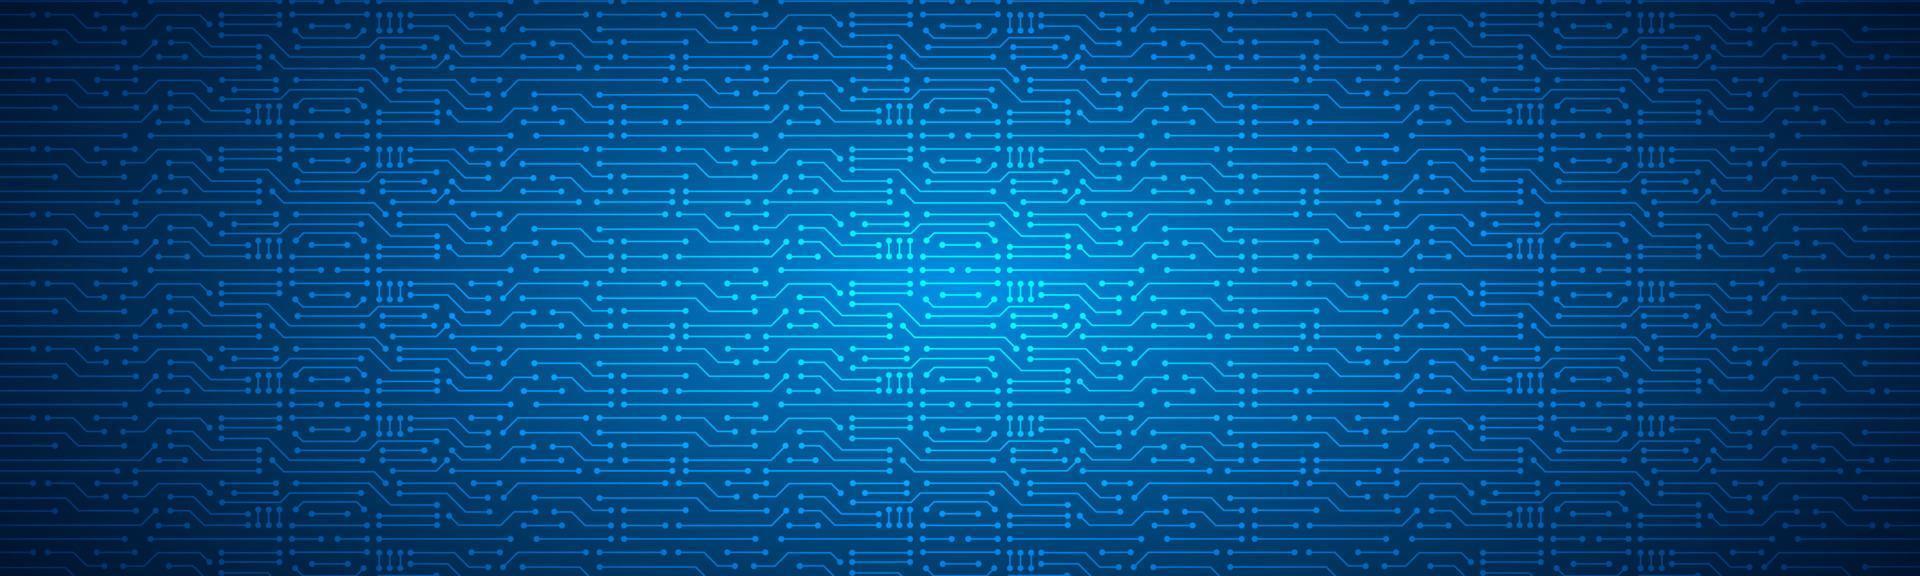 sfondo della tecnologia del microchip, modello di circuito digitale blu vettore